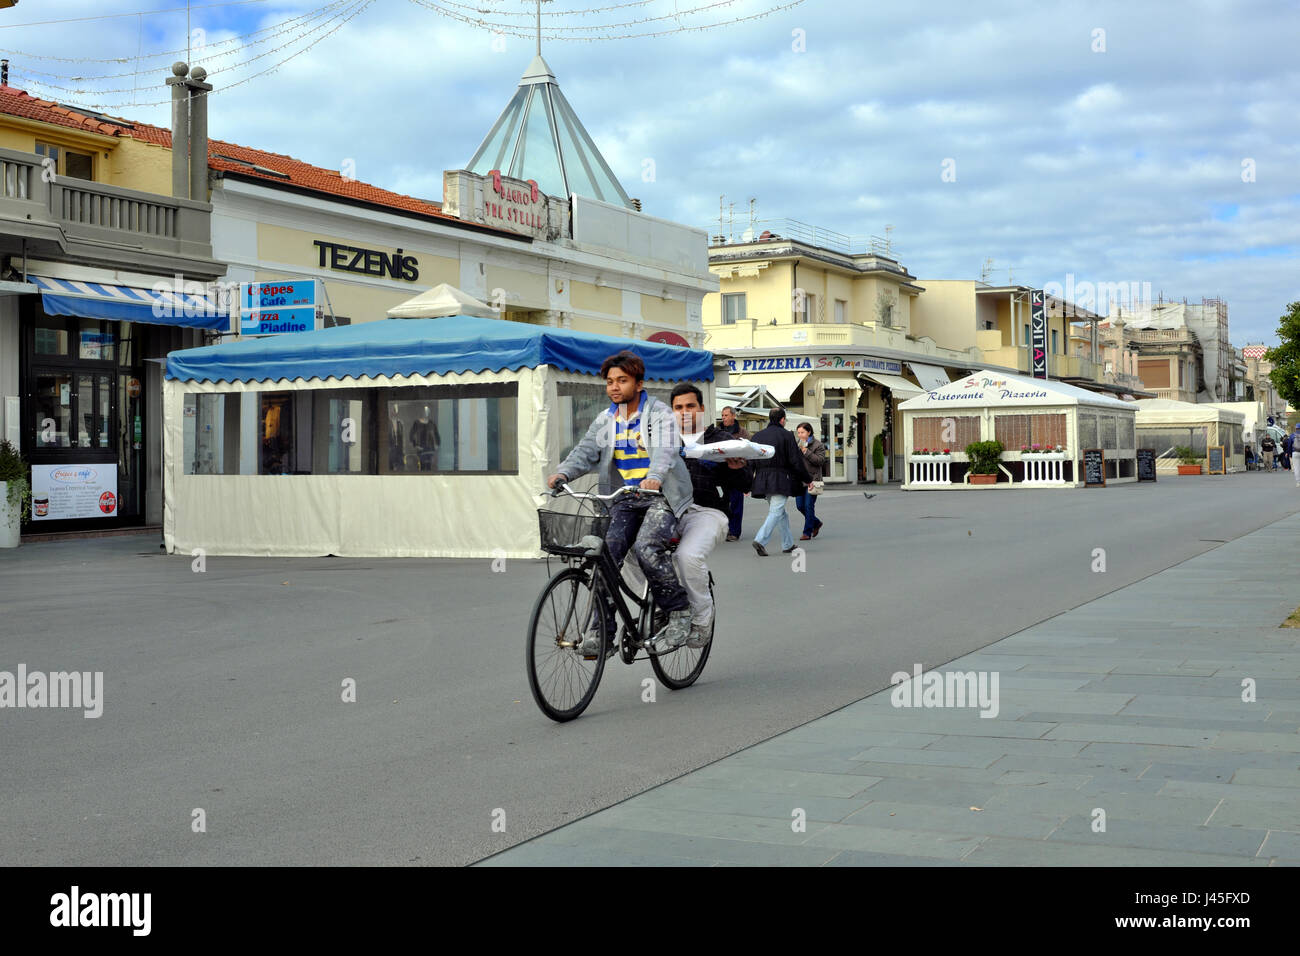 Zur Mittagszeit nachhaltigen Verkehrs - zwei männliche asiatische Arbeiter mit Mittagessen auf einer Fahrrad - Viareggio Promenade, Toskana, Italien, Europa Stockfoto